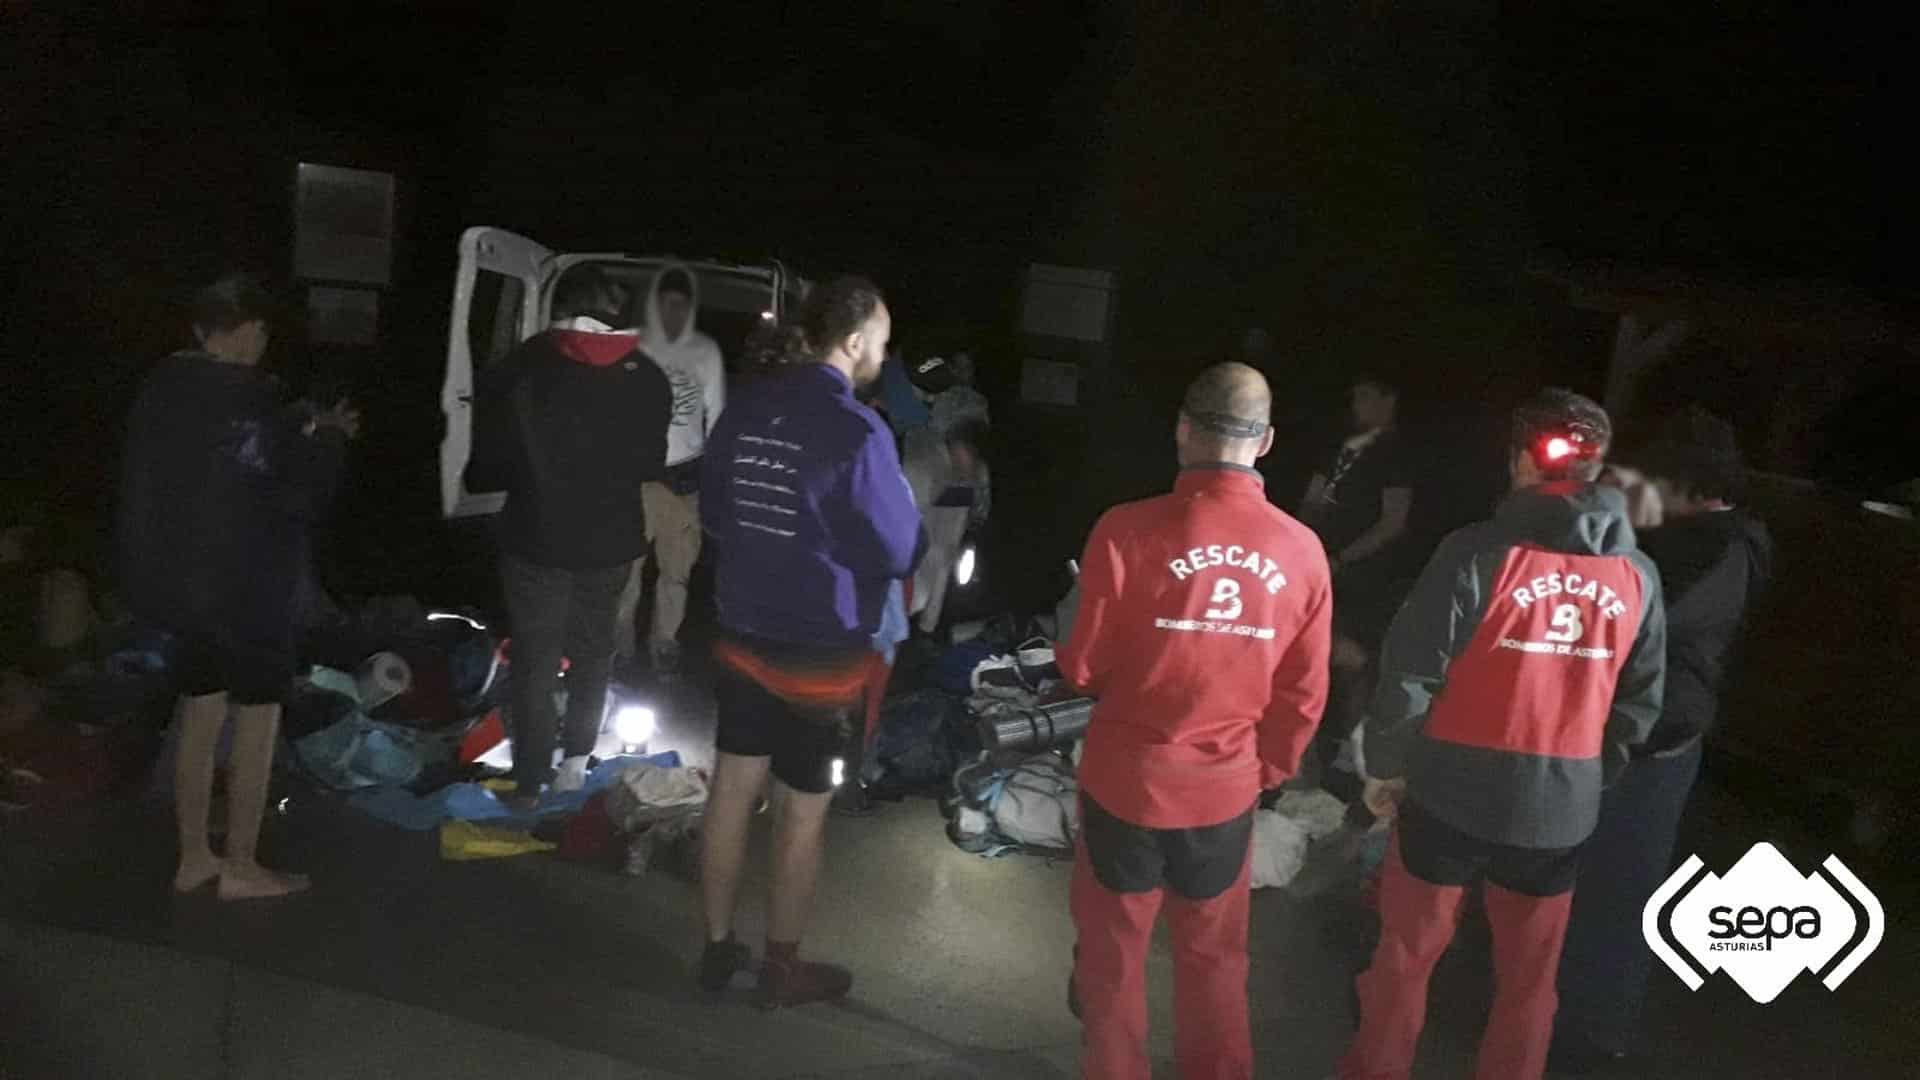 Rescatado un grupo scout con 10 menores que se perdieron en la zona de Lagos de Covadonga